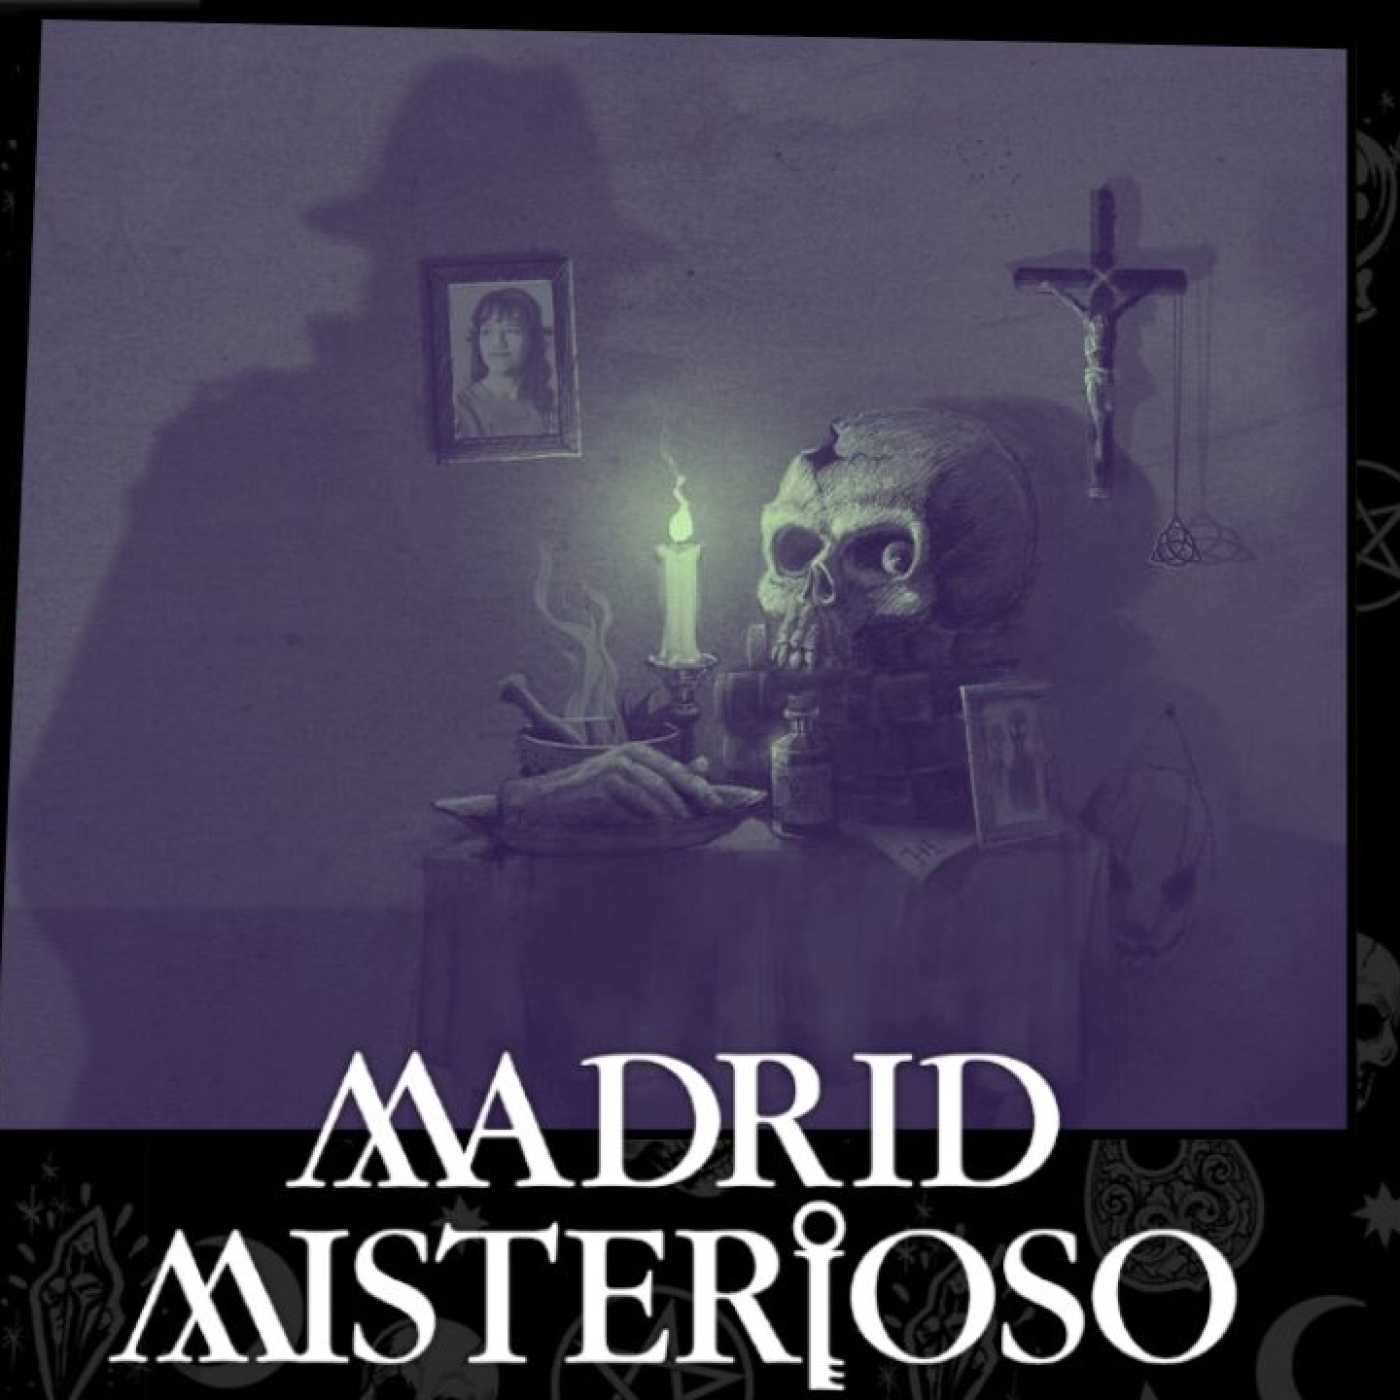 El enigma de la maldad humana - Madrid Misterioso 5x44